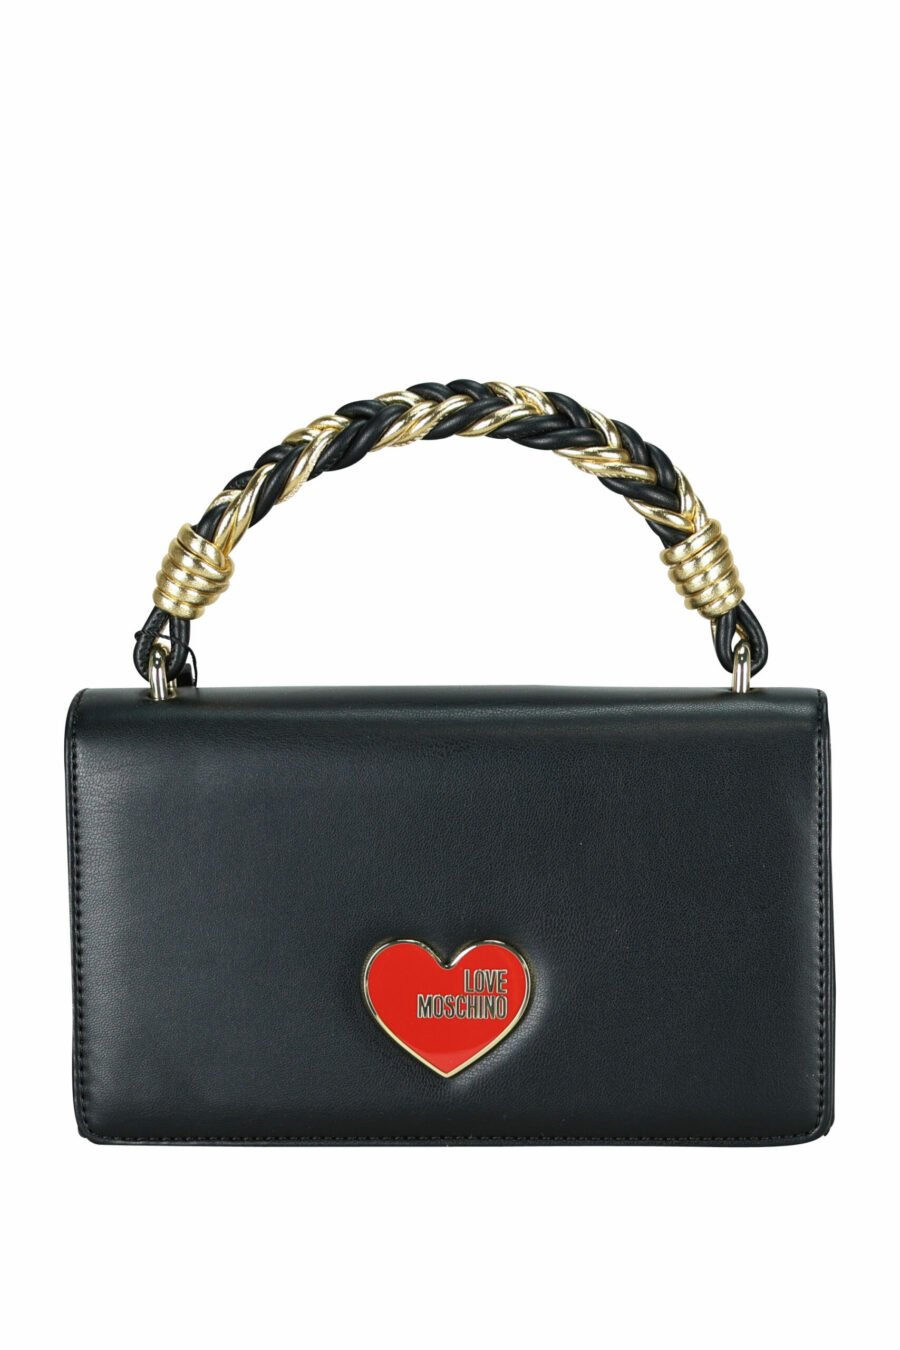 Black shoulder bag with red heart logo - 107946 scaled